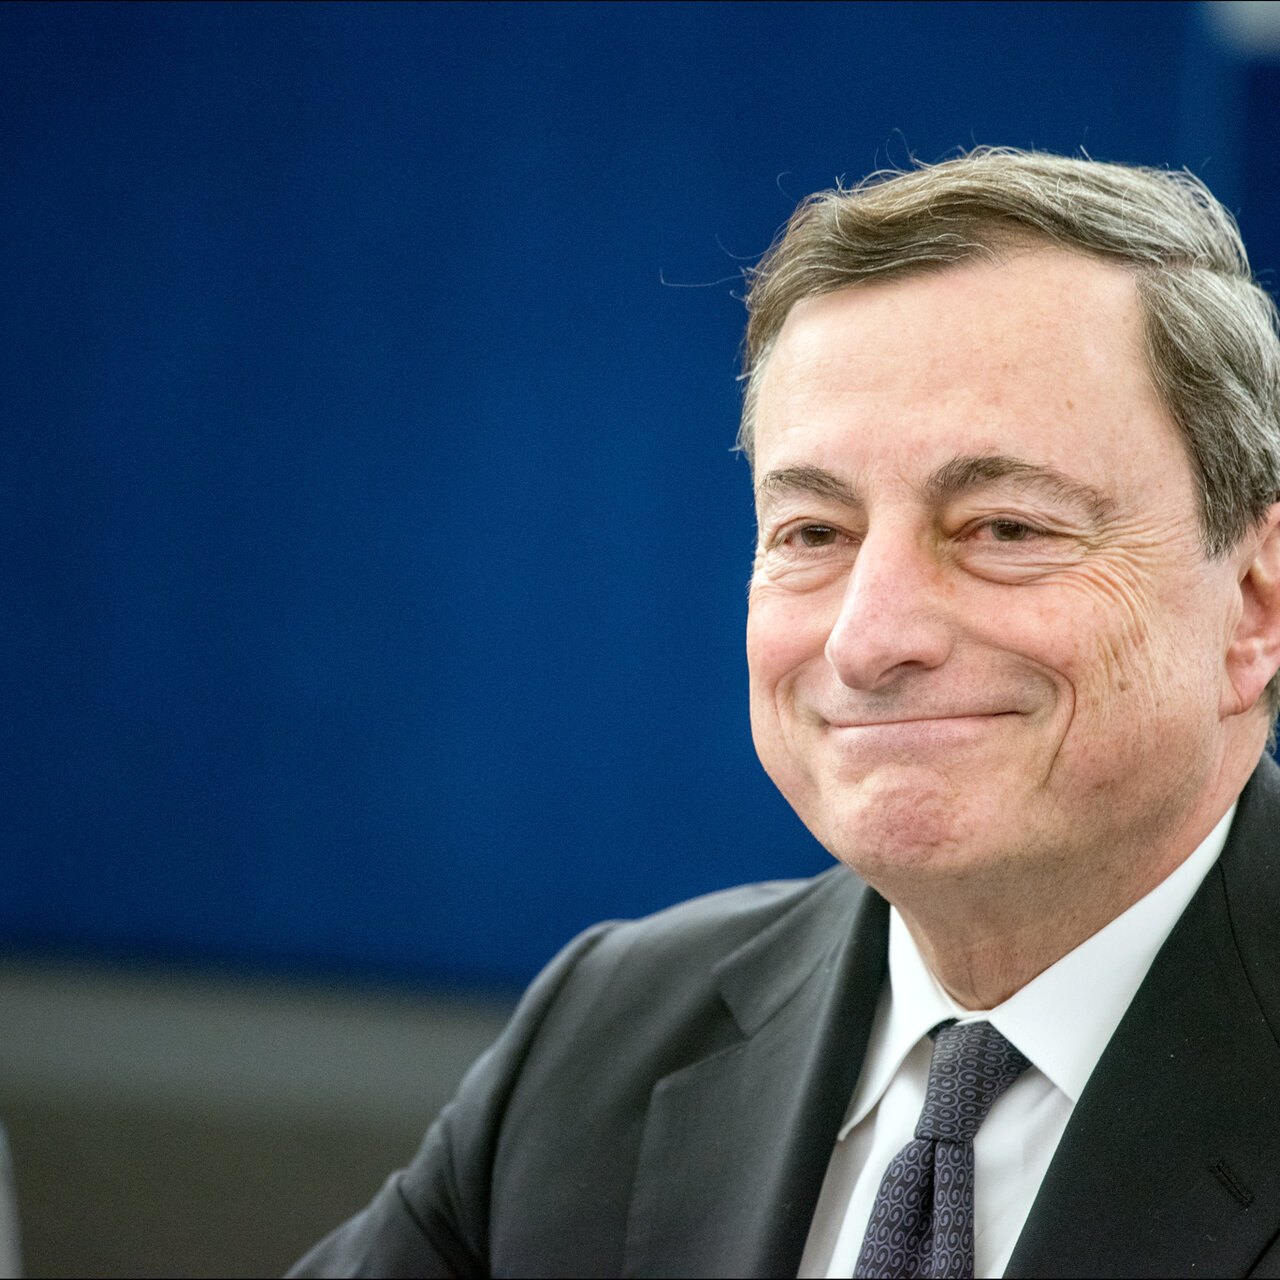 Draghi Rede Geringere Wahrscheinlichkeit Von Hartem Brexit Hat Die Situation Verbessert